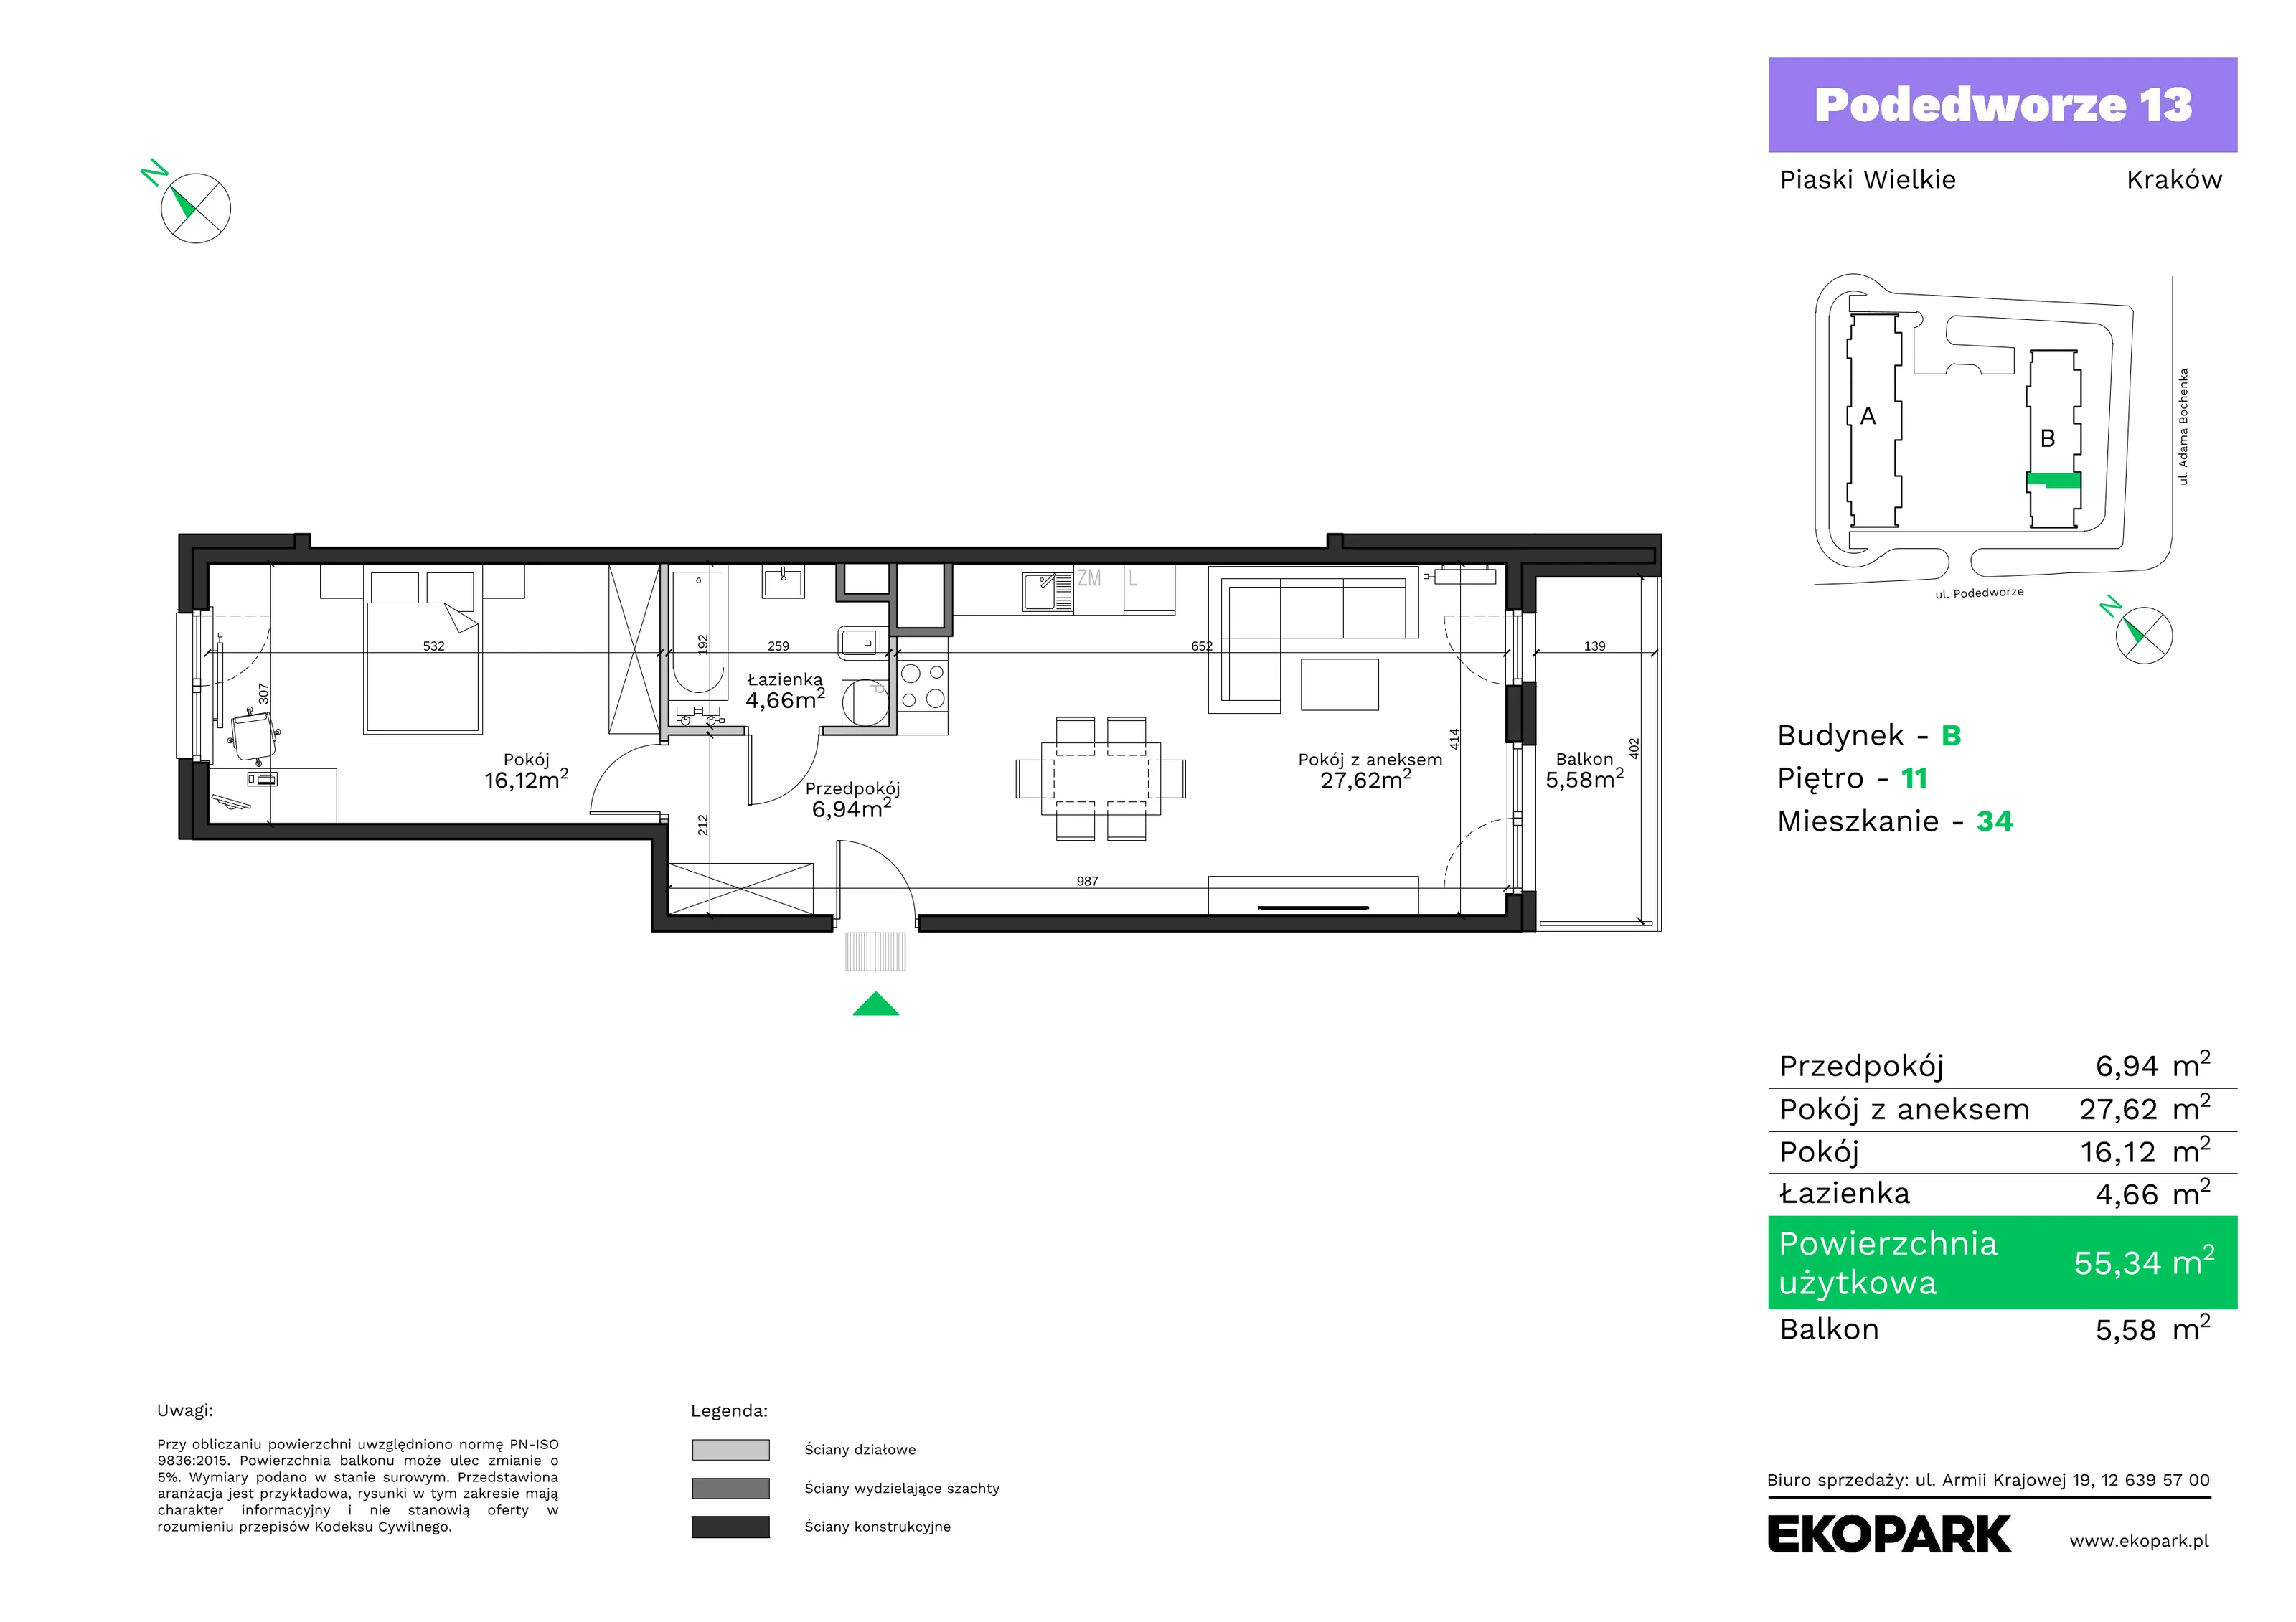 Mieszkanie 55,34 m², piętro 11, oferta nr B34, Podedworze 13, Kraków, Podgórze Duchackie, Piaski Wielkie, ul. Podedworze 13